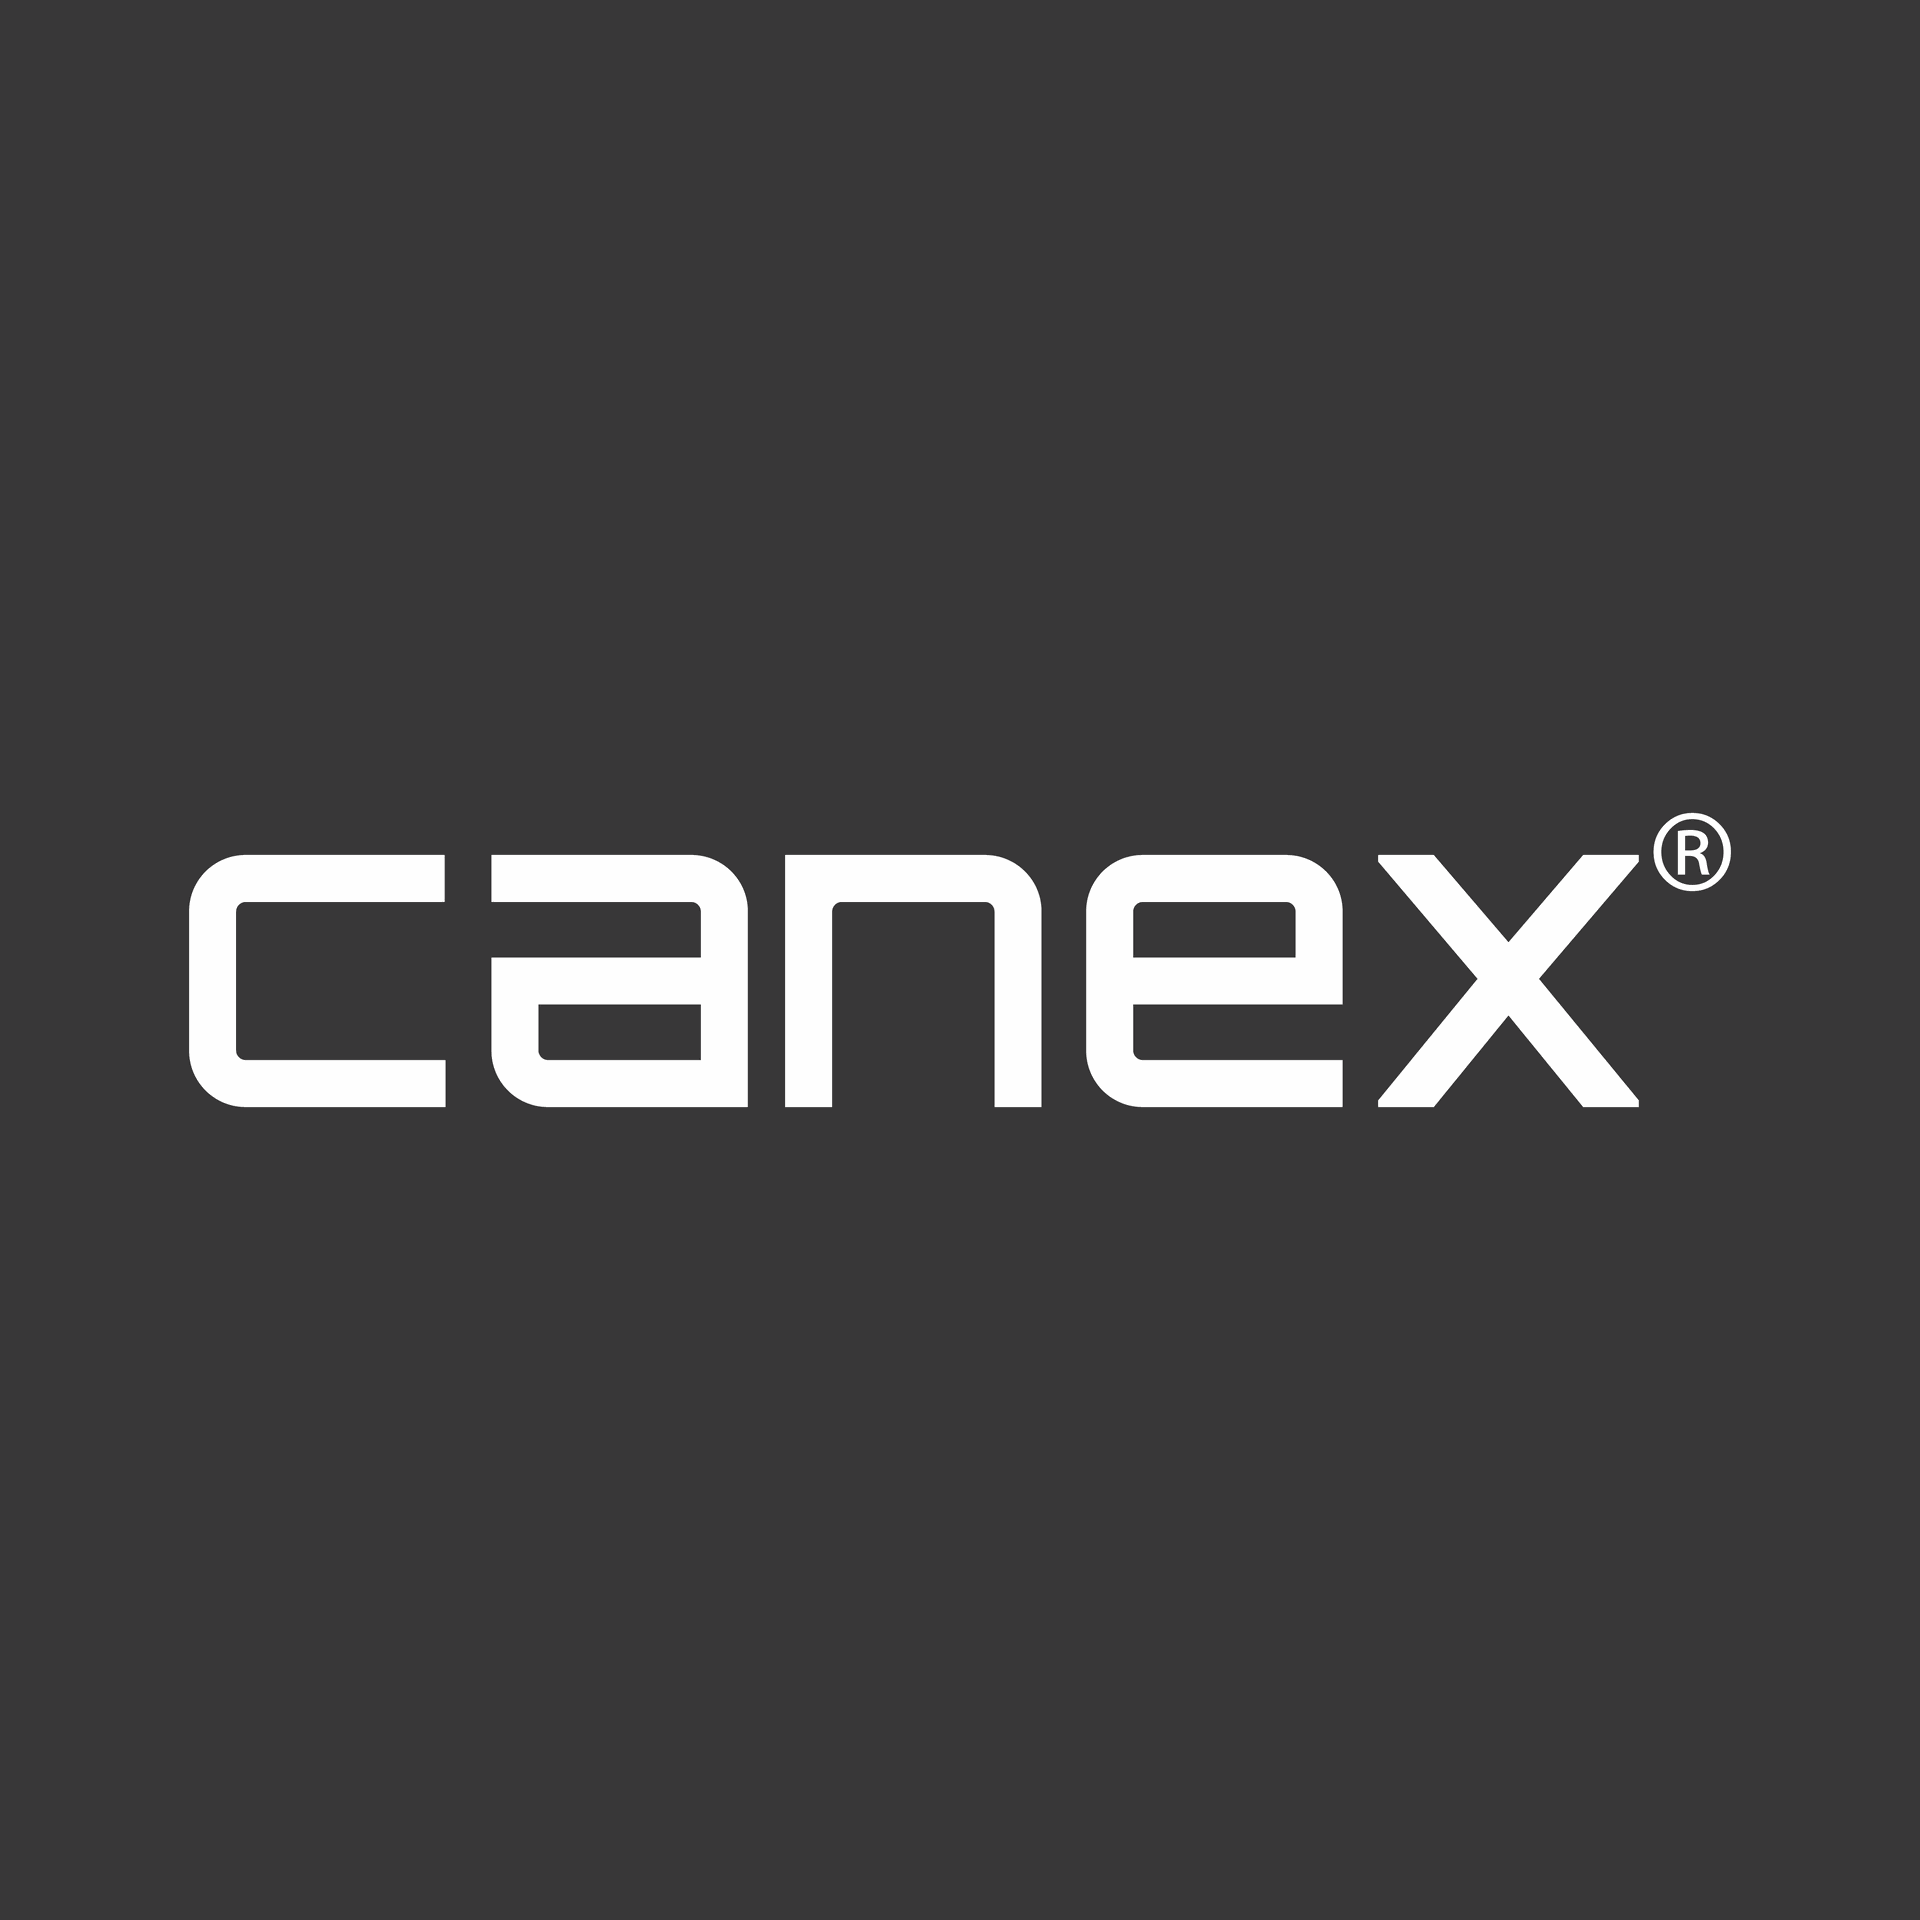 Canex